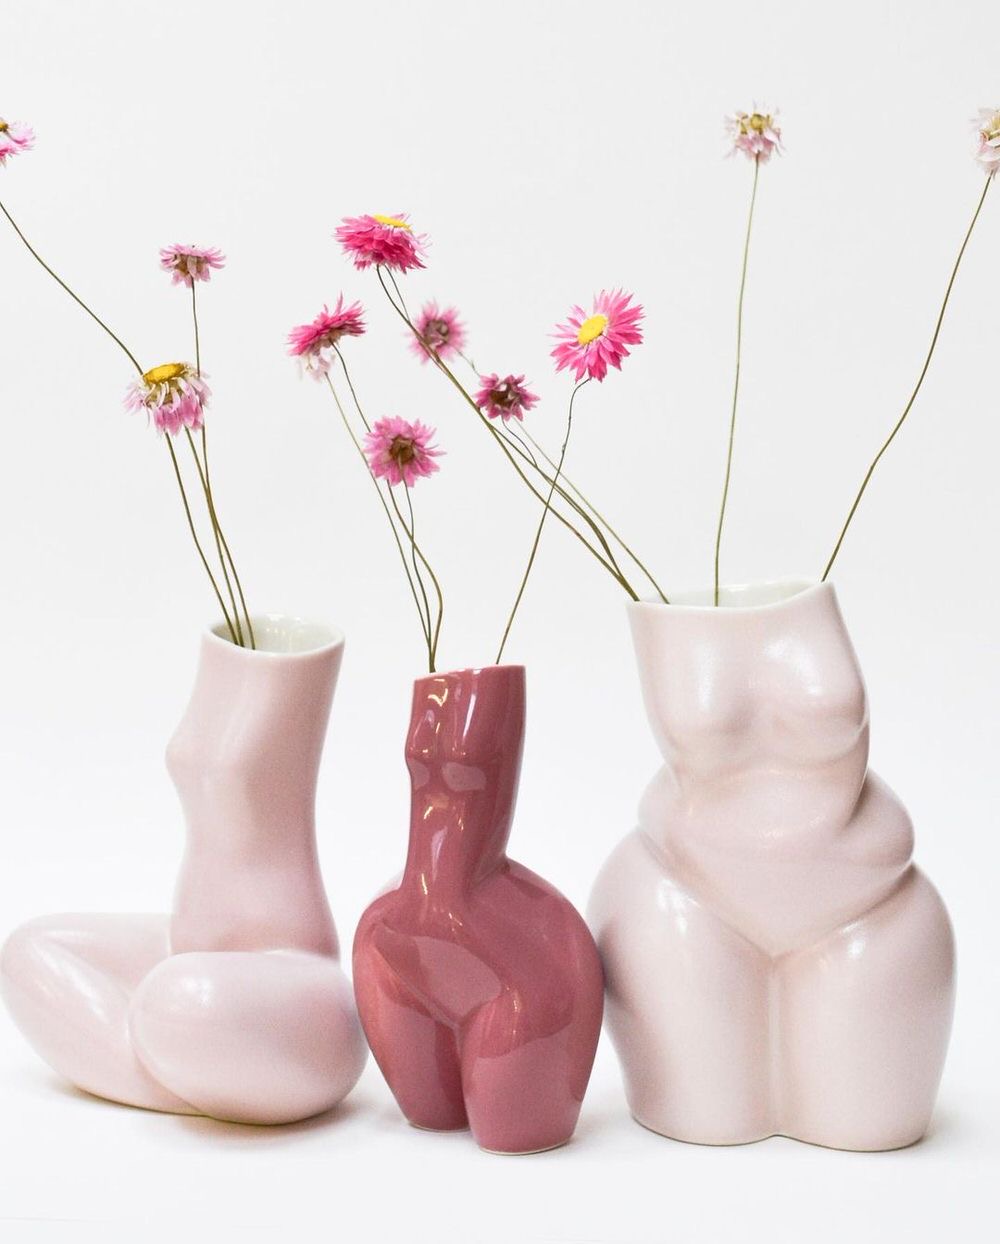 Workshop di ceramica, faccio un vaso – il blog di Bianca Iula